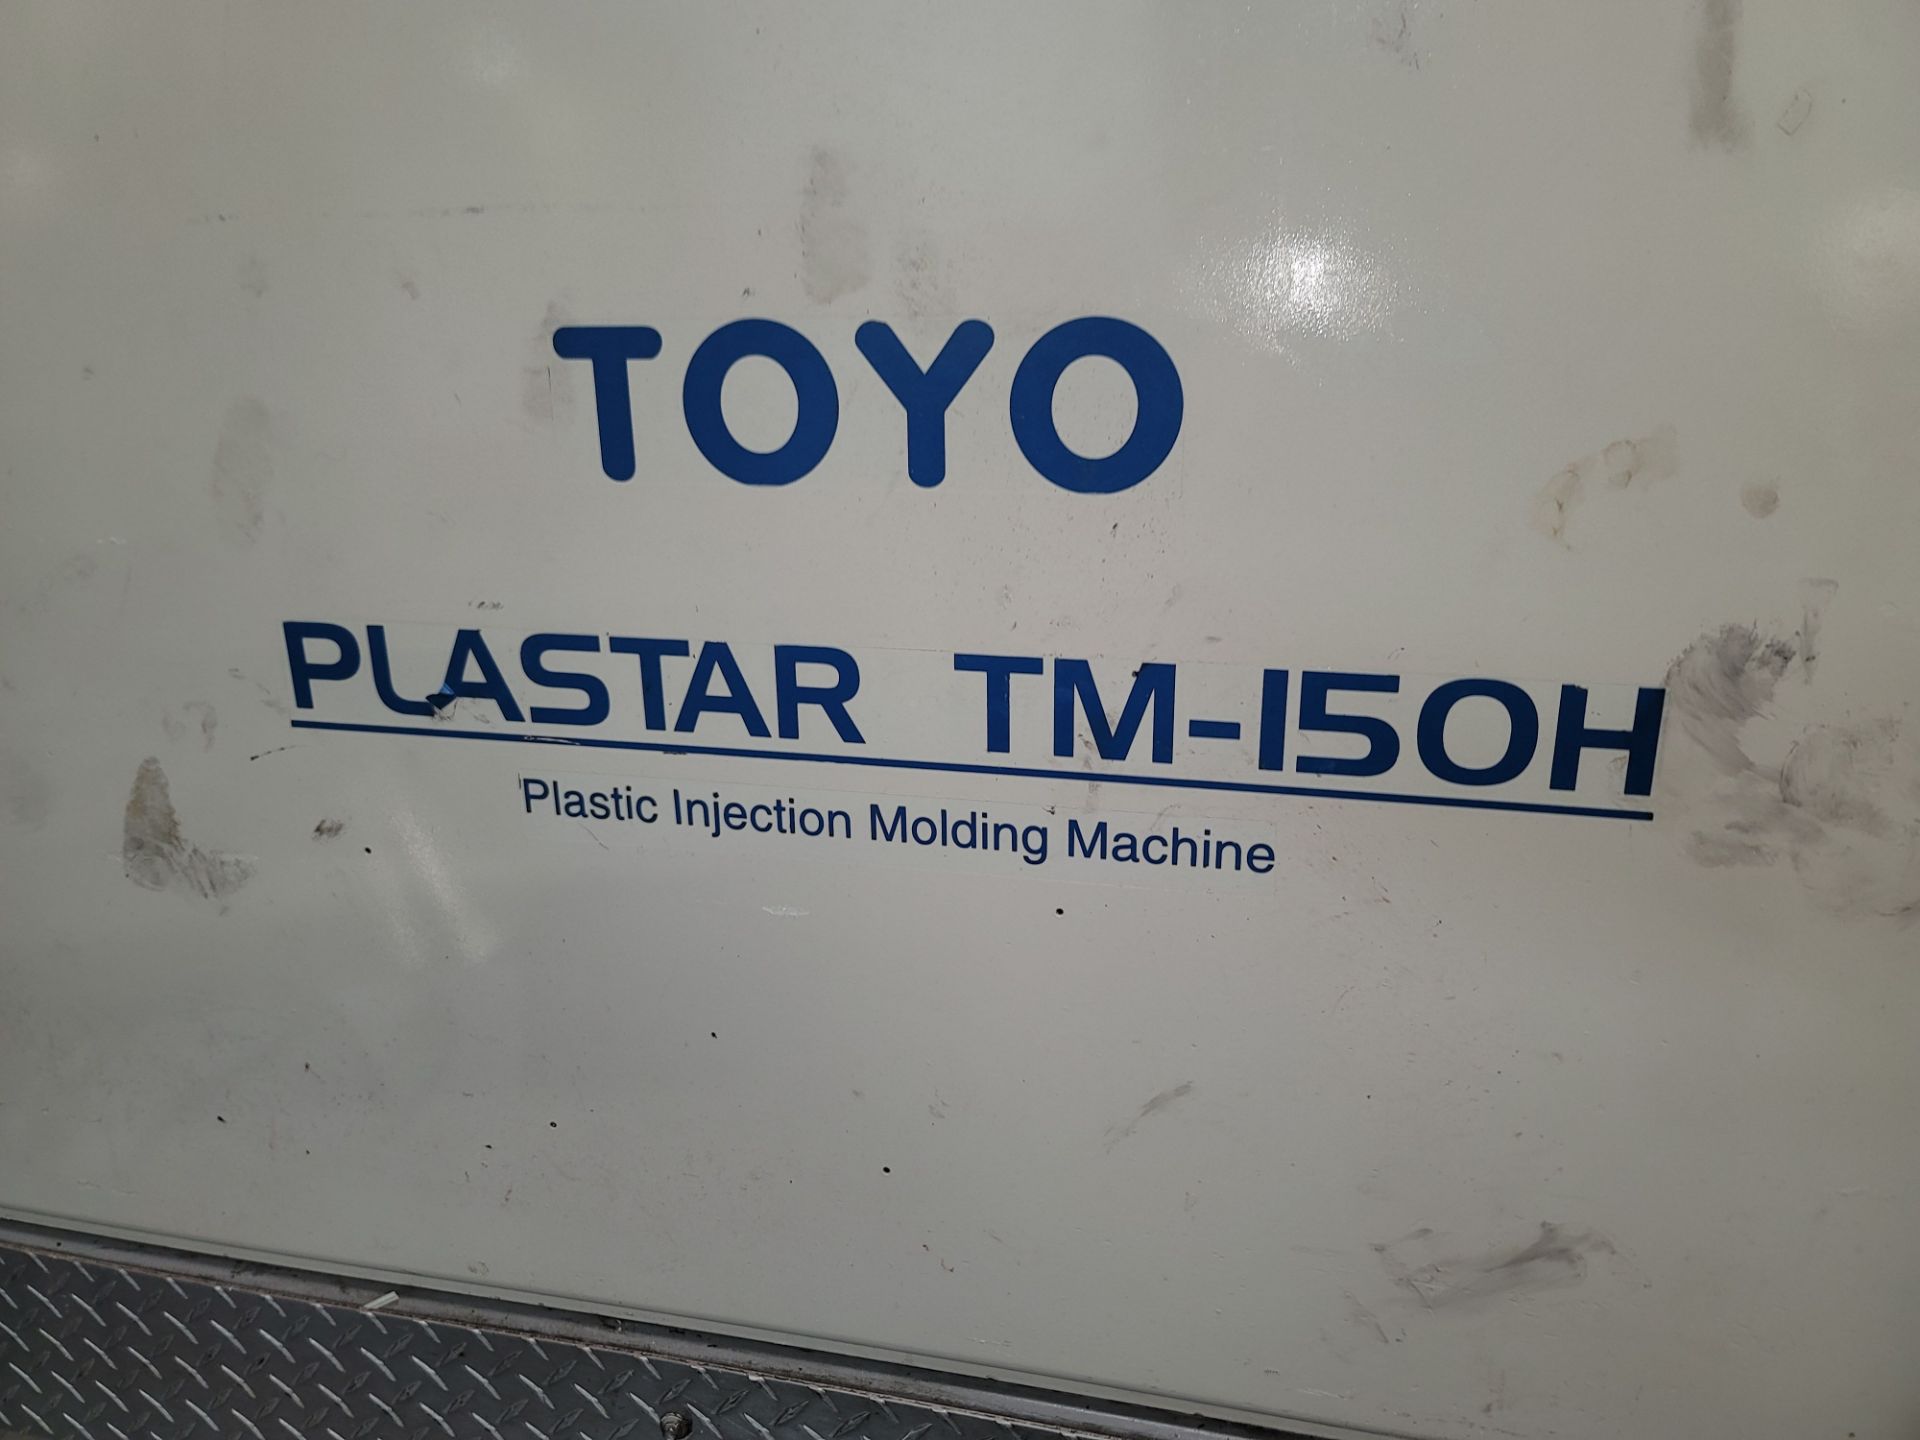 TOYO PLASTAR TM-150H PLASTIC INJECTION MOLDING MACHINE, 150 TON CAPACITY, 6.7 OZ SHOT SIZE, 25.2" - Image 4 of 8